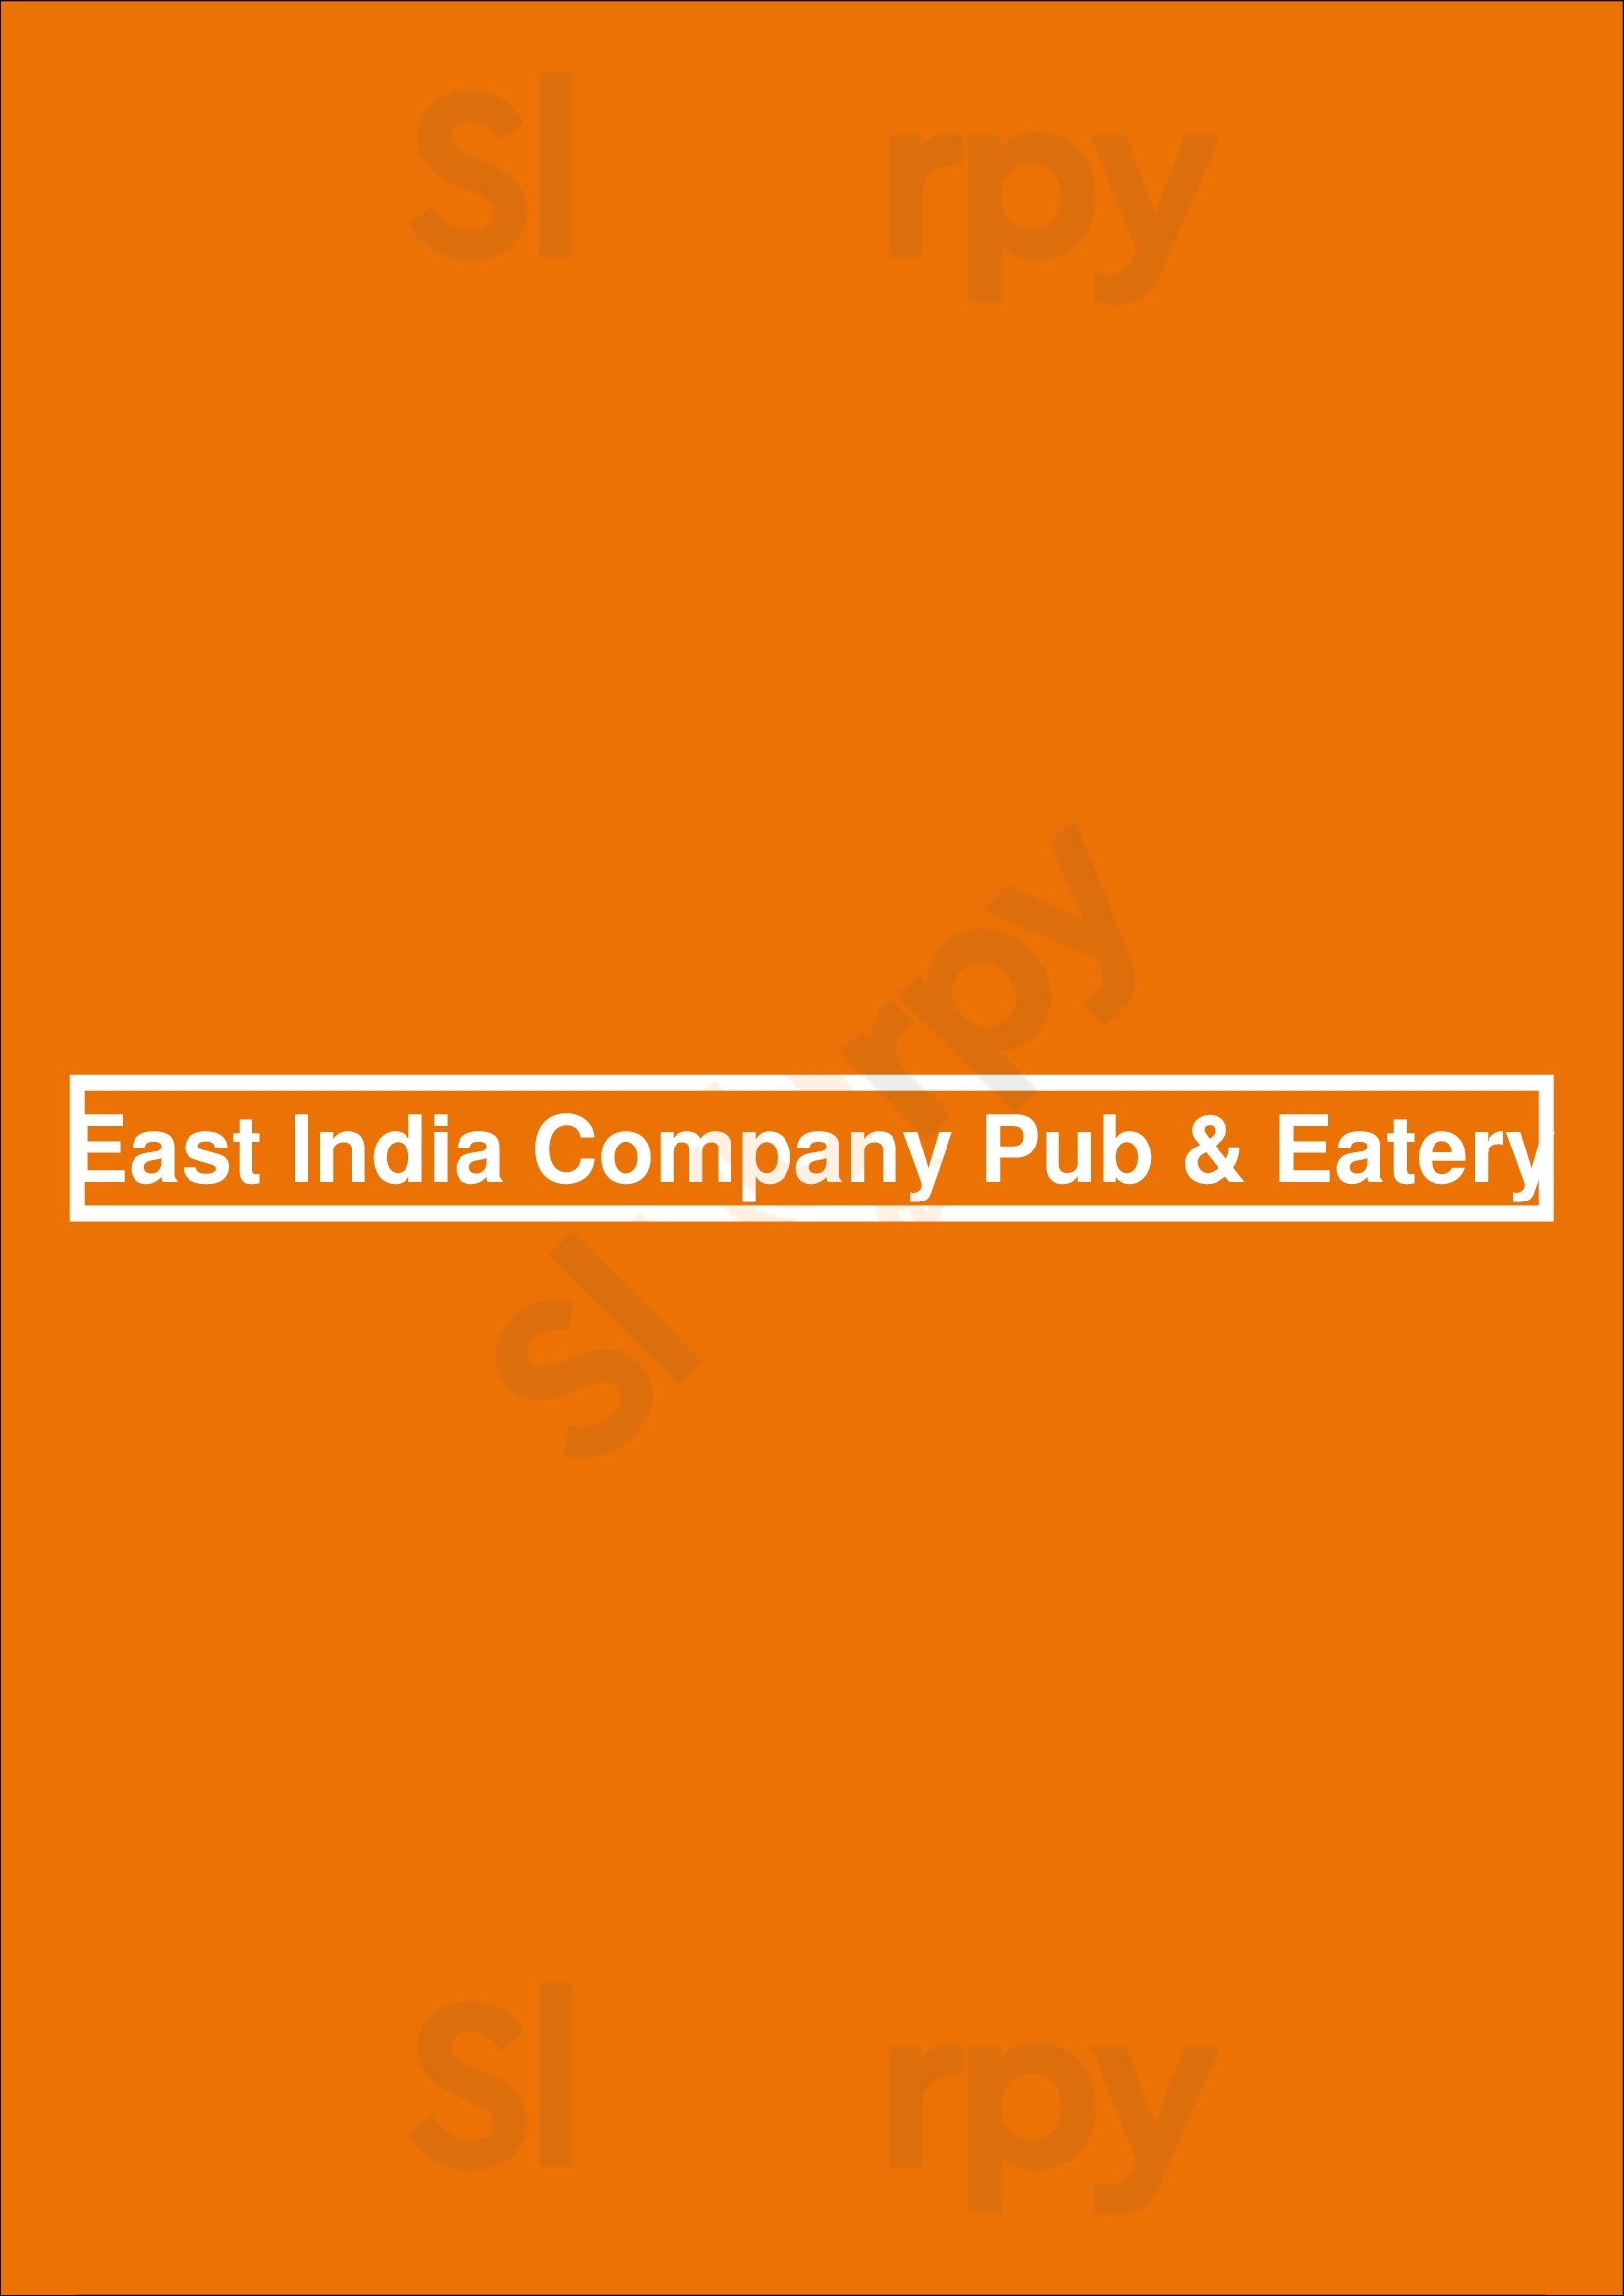 East India Company Pub & Eatery Ottawa Menu - 1